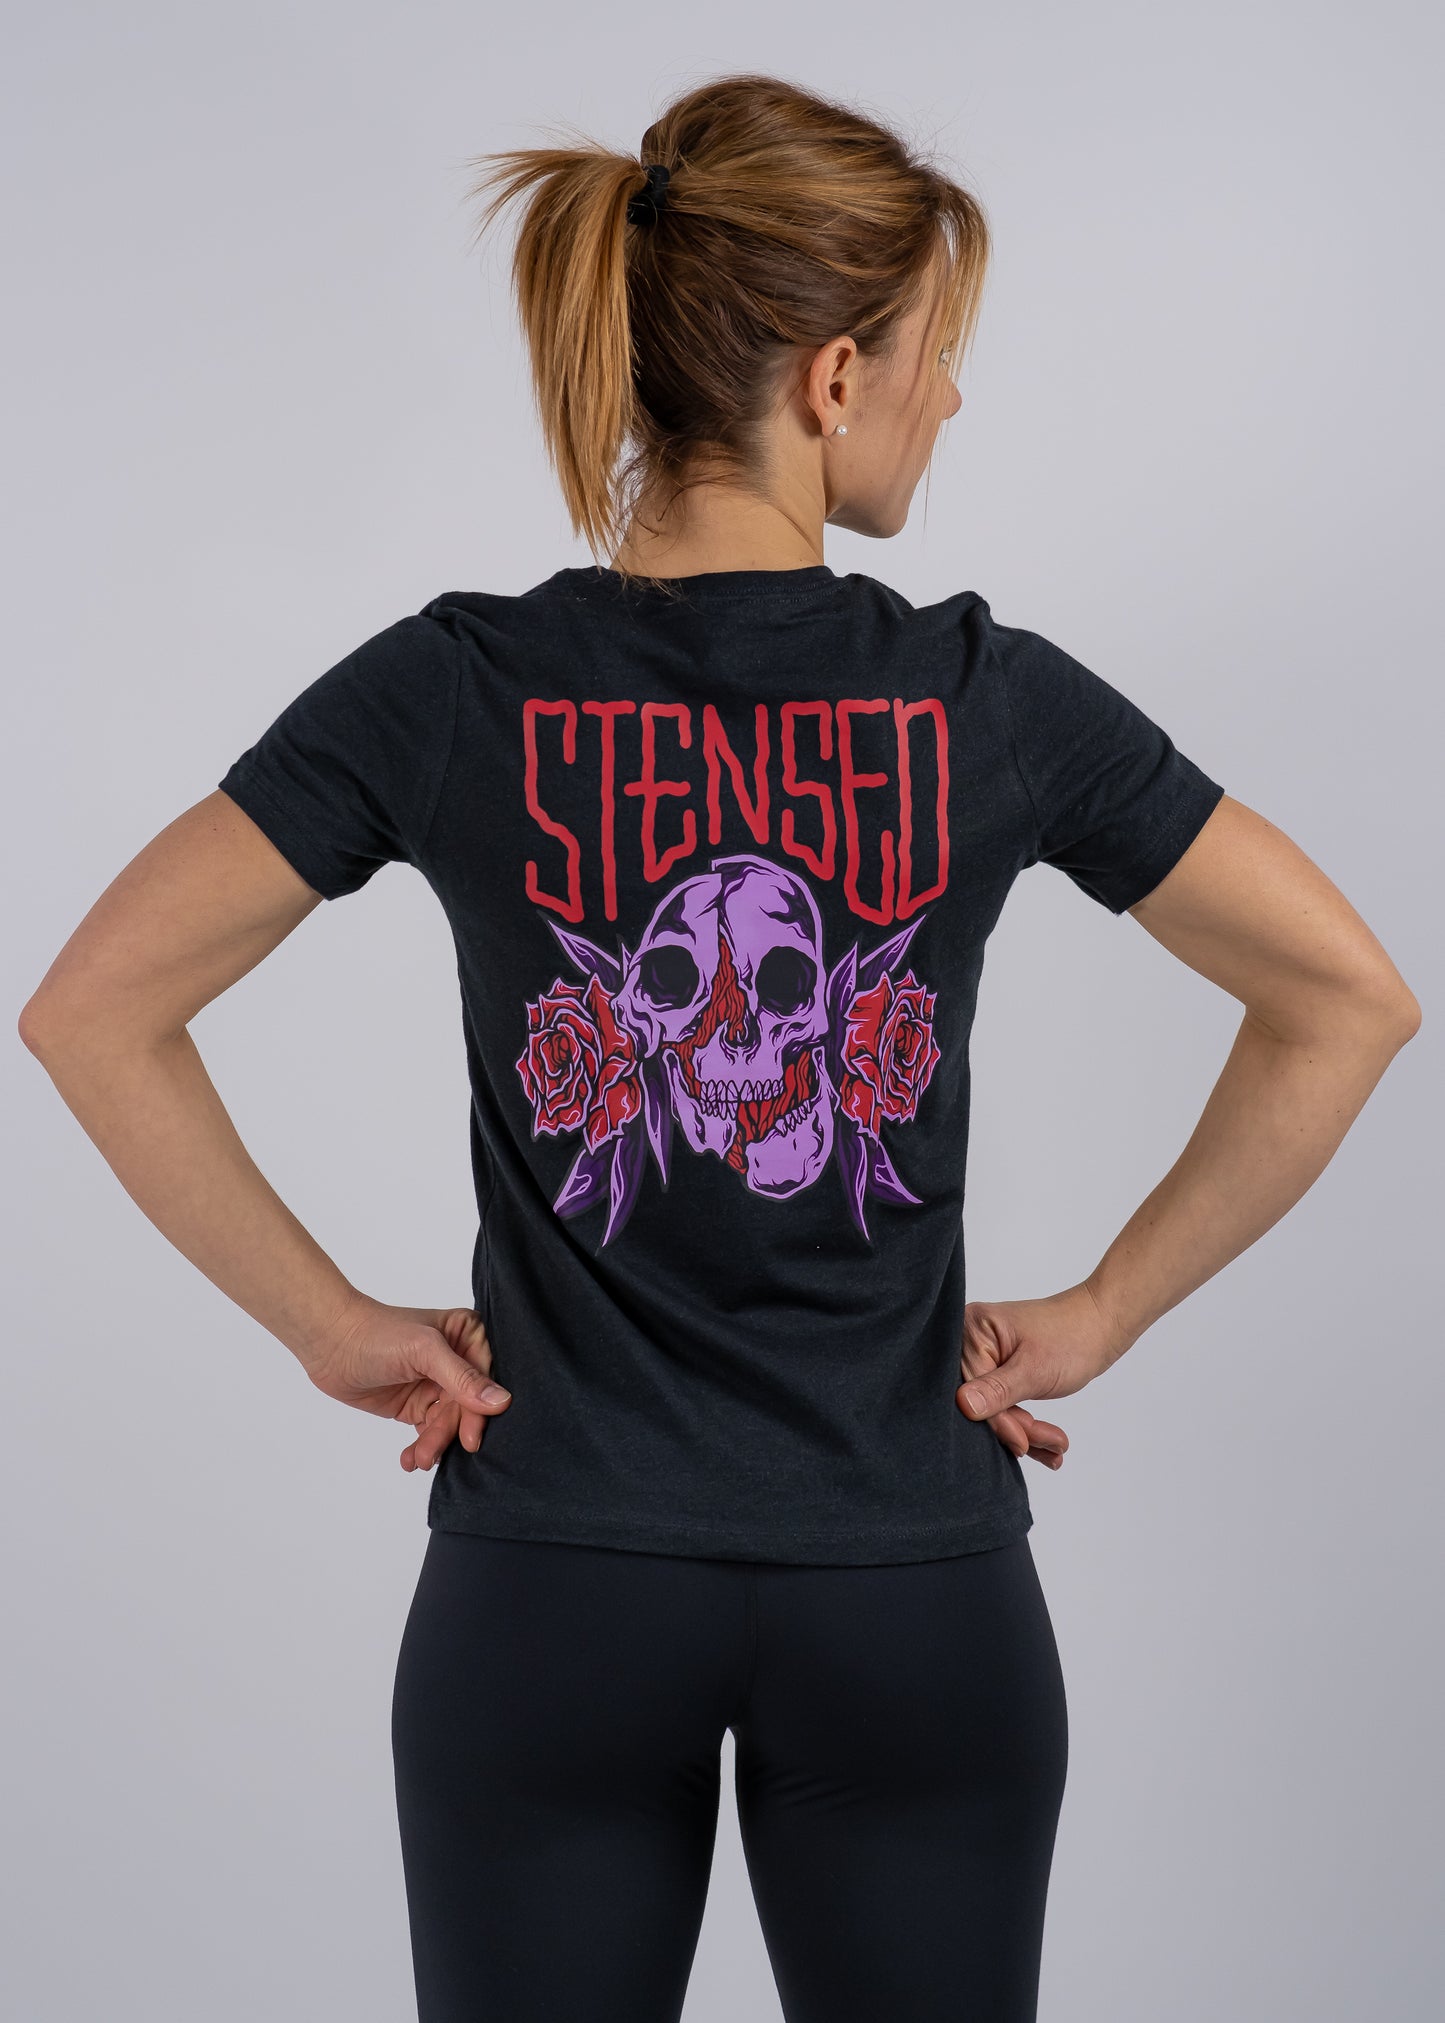 T-shirt STENSED Skull Femme